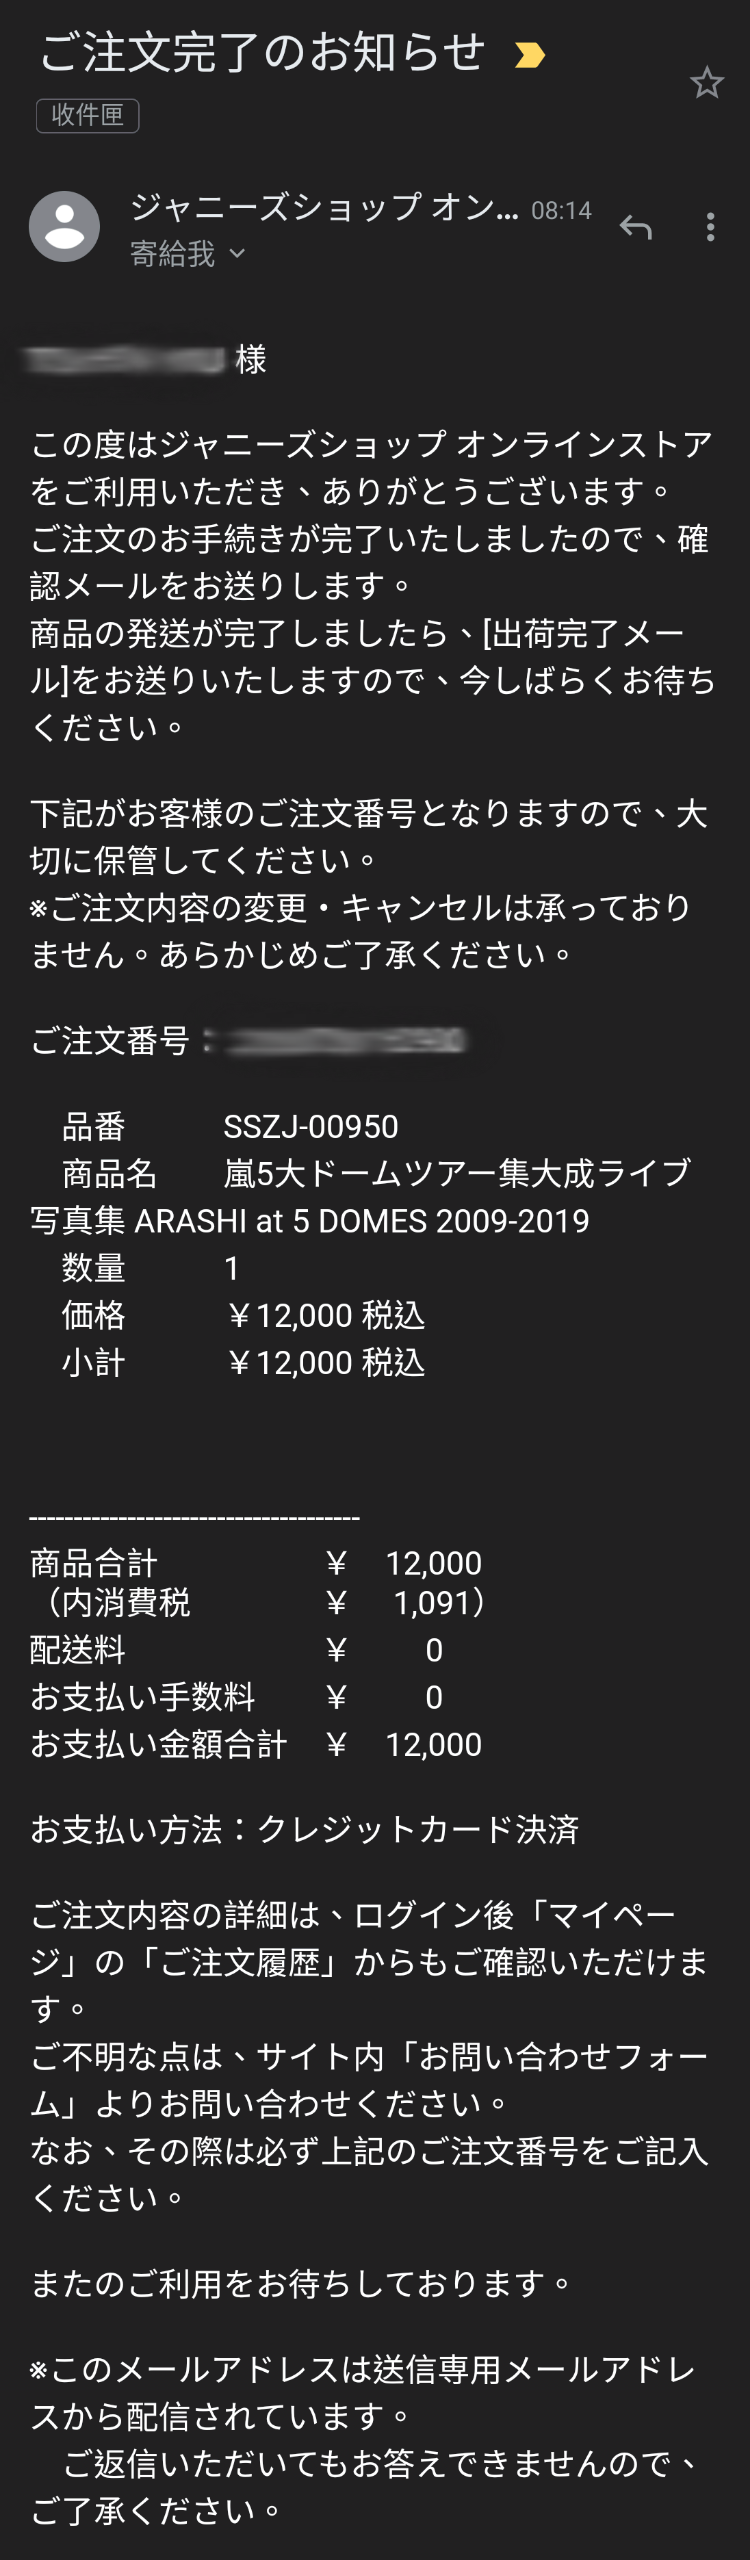 【教學】嵐5大ドームツアー集大成ライブ写真集 ARASHI at 5 DOMES 2009-2019 購買流程